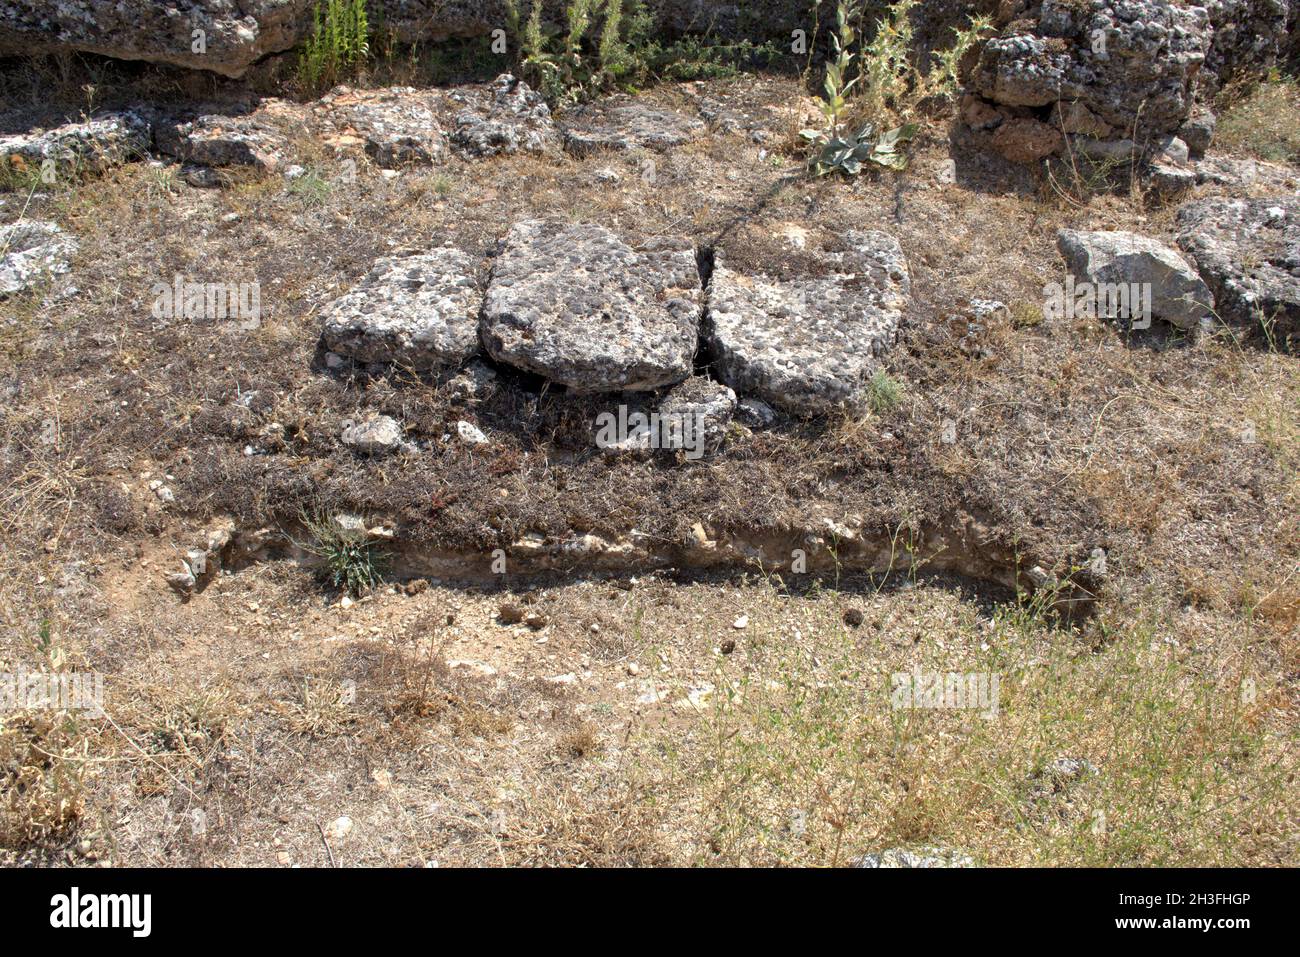 Tumbas antropomorfas excavadas en suelo rocoso, orientadas de este a oeste. Data del siglo 10th, situado en la necrópolis medieval. Foto de stock